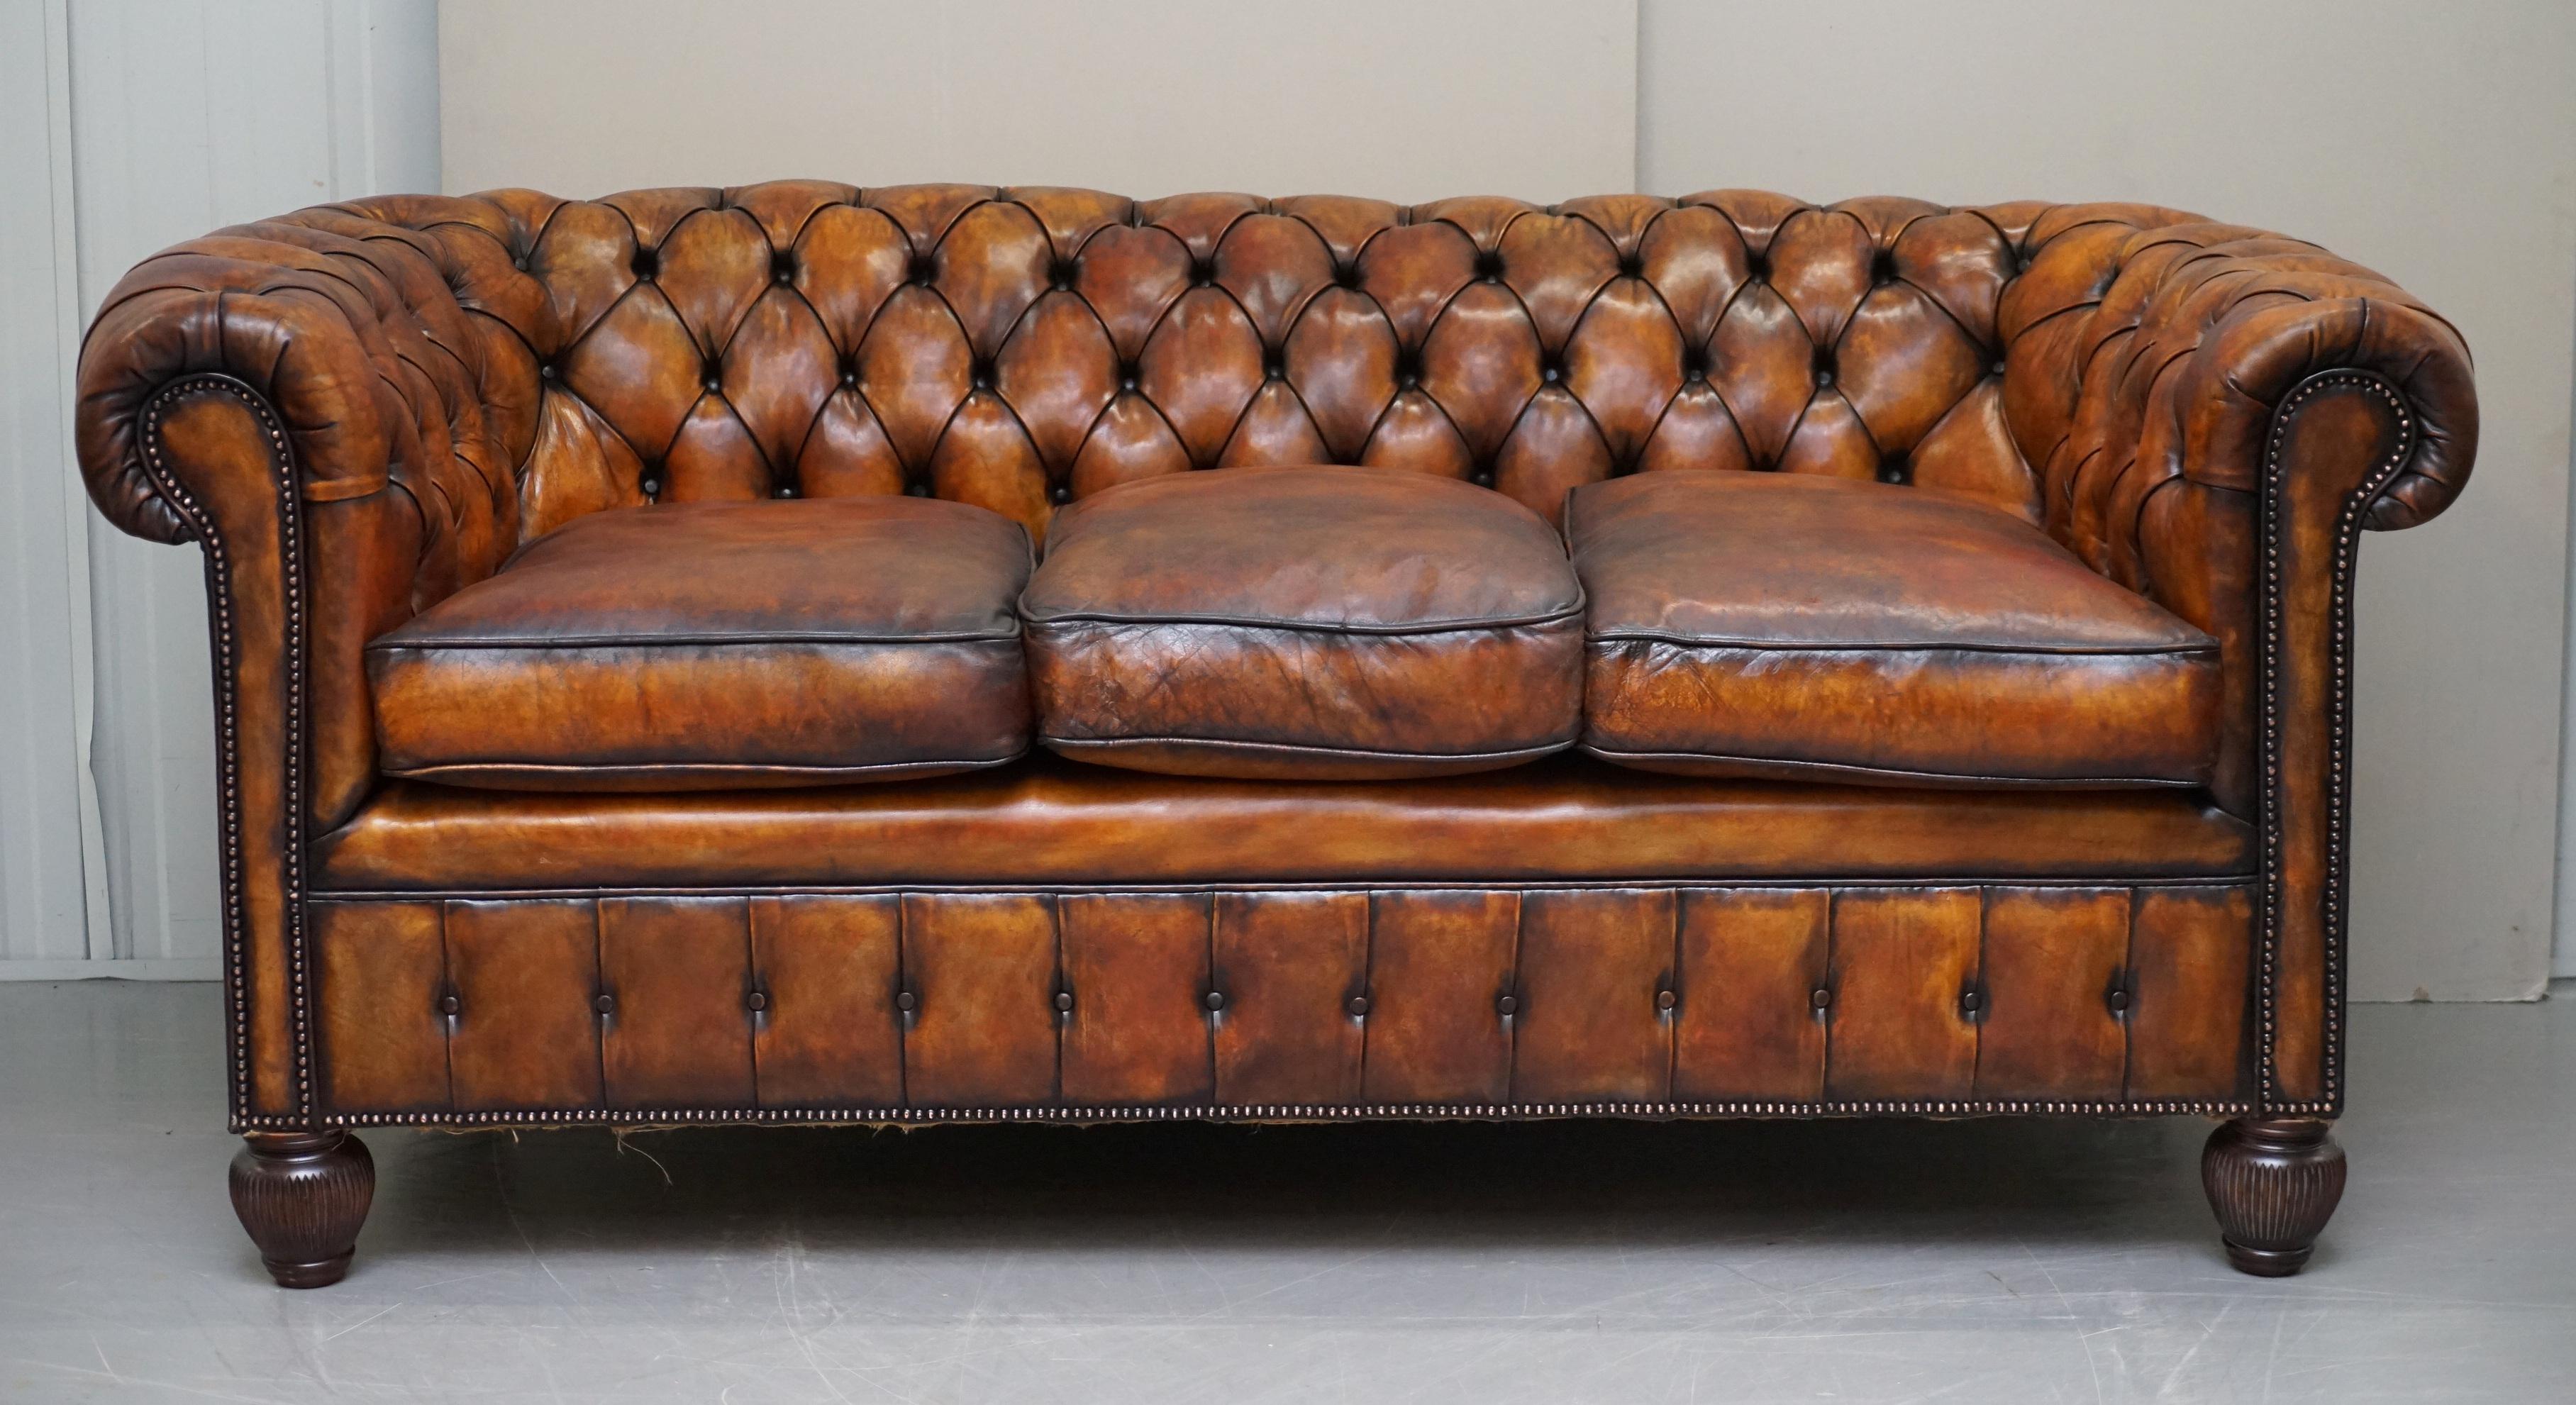 Wir freuen uns, dieses atemberaubende, vollständig restaurierte, um 1900 handgefärbte, whiskeybraune Chesterfield-Ledersofa mit federgefüllten Polstern zum Verkauf anzubieten

Dieses Sofa ist eines der schönsten, die ich in Bezug auf die originale